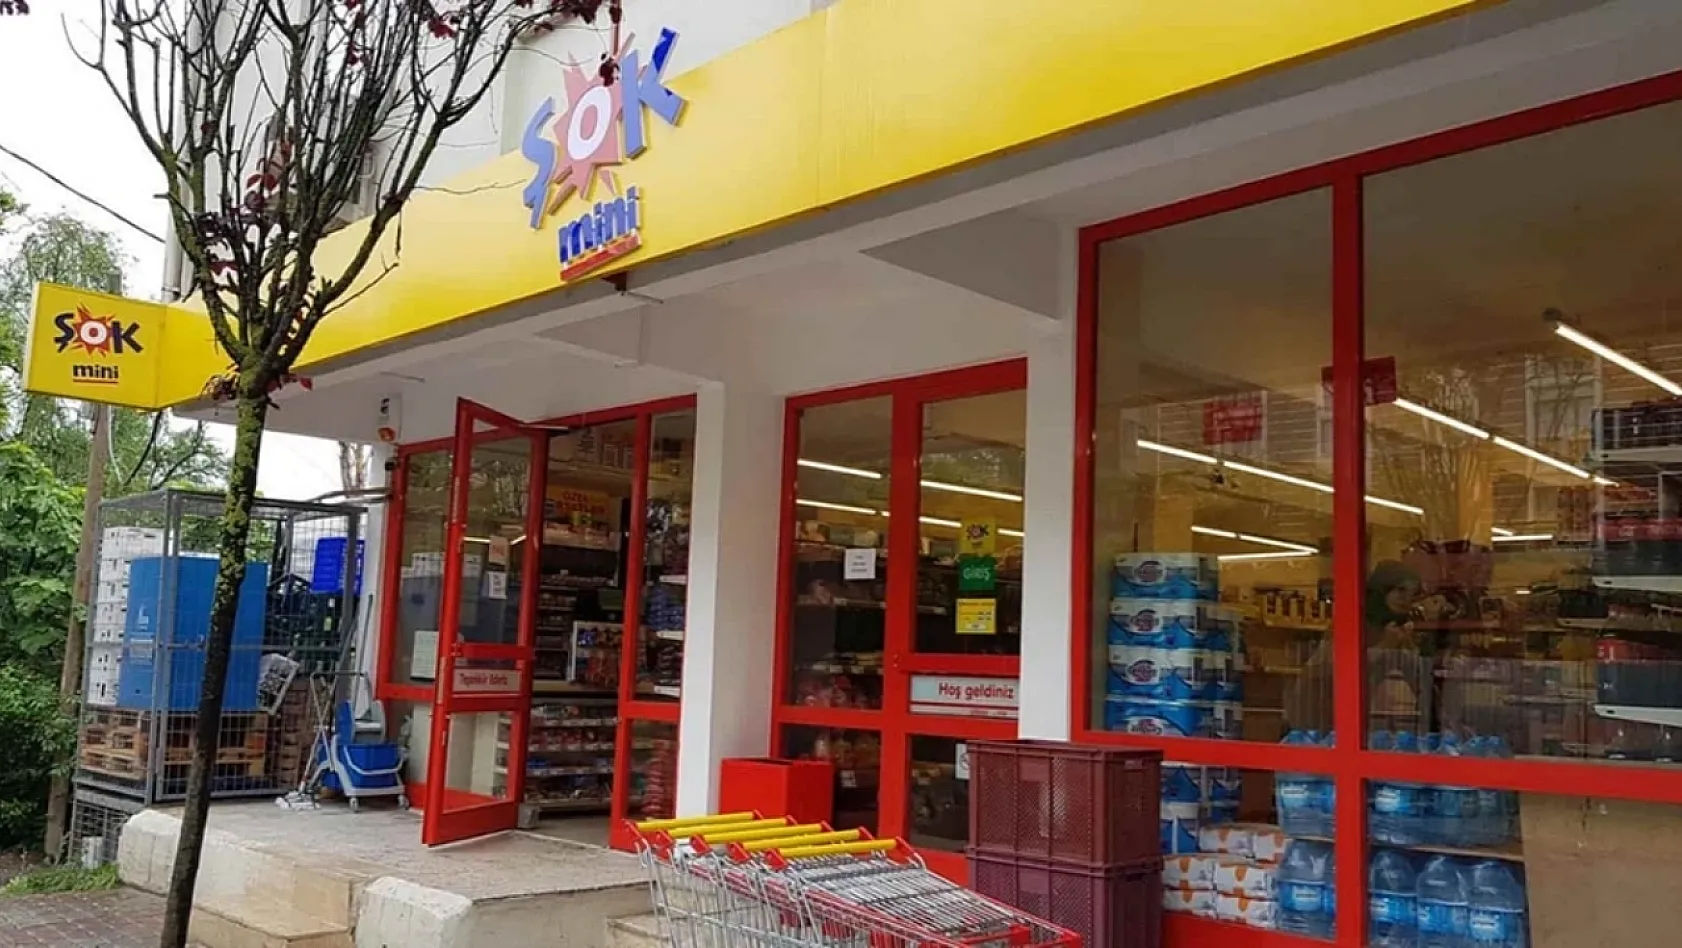 ŞOK marketleri Elazığ'da dev indirime gitti: Bu ürünlerin fiyatını görenler gözlerine inanamıyor